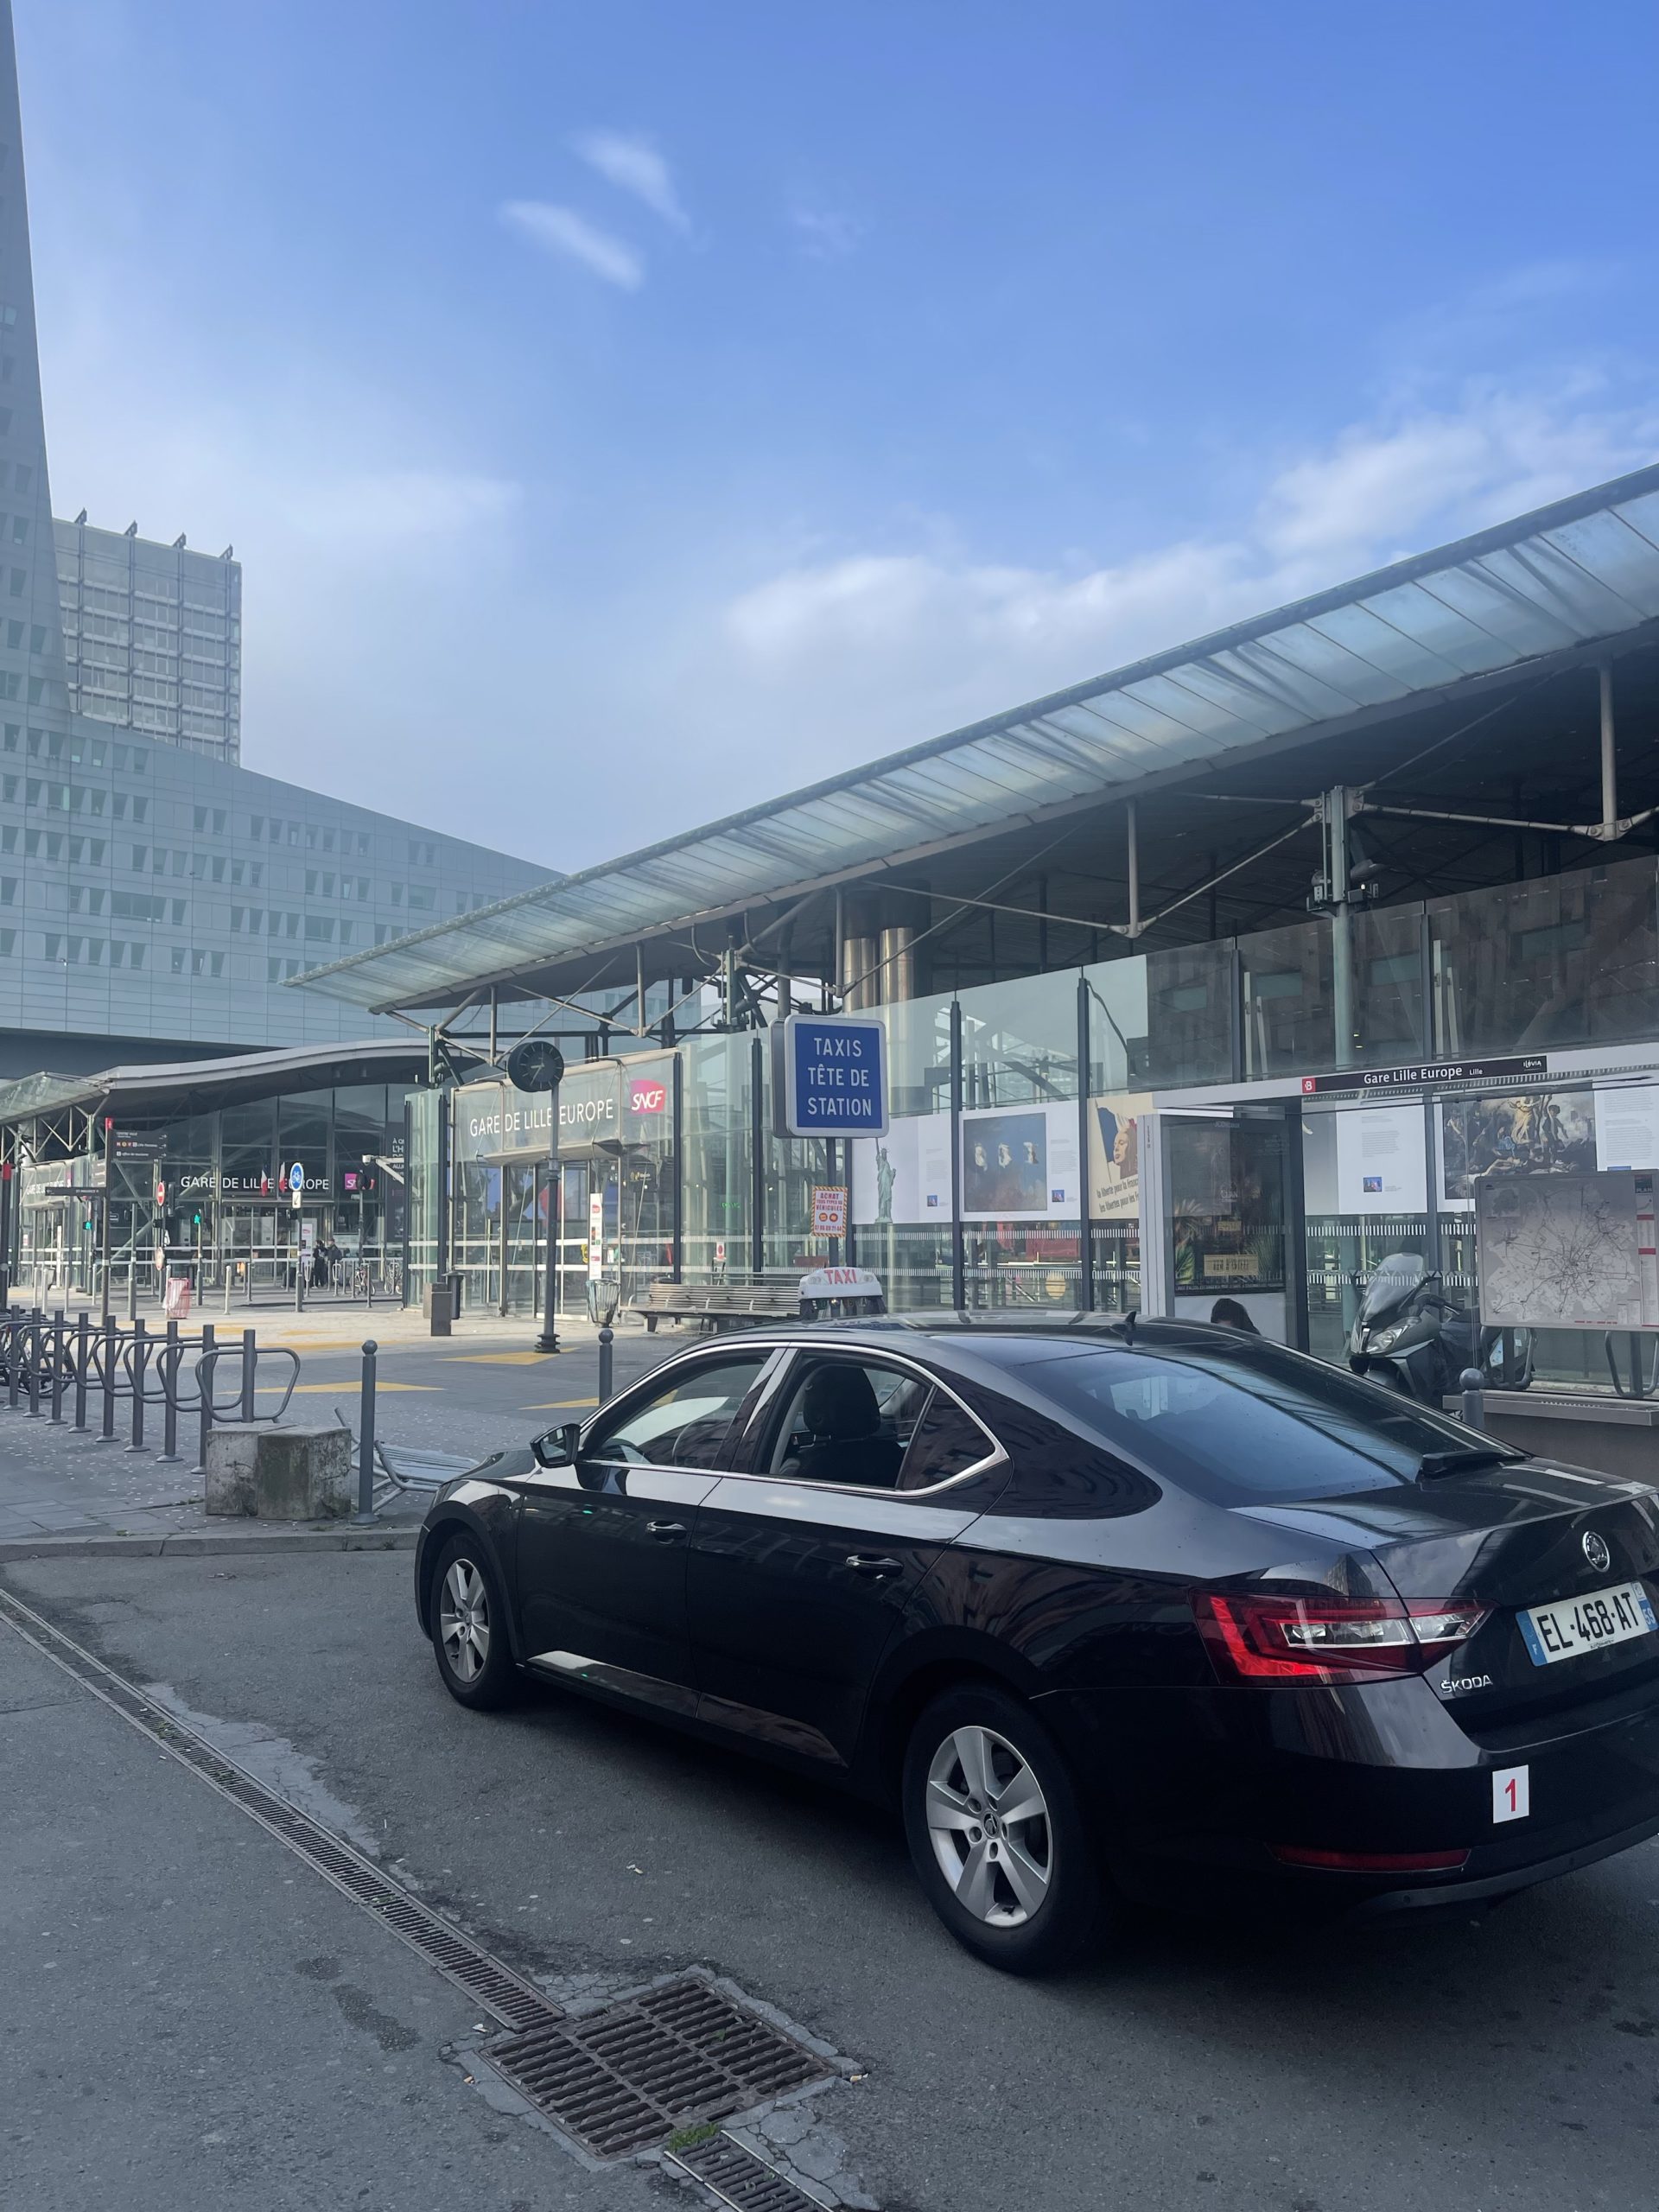 Réserver un Taxi à Lille – Des Déplacements Faciles avec Notre Service de Taxi